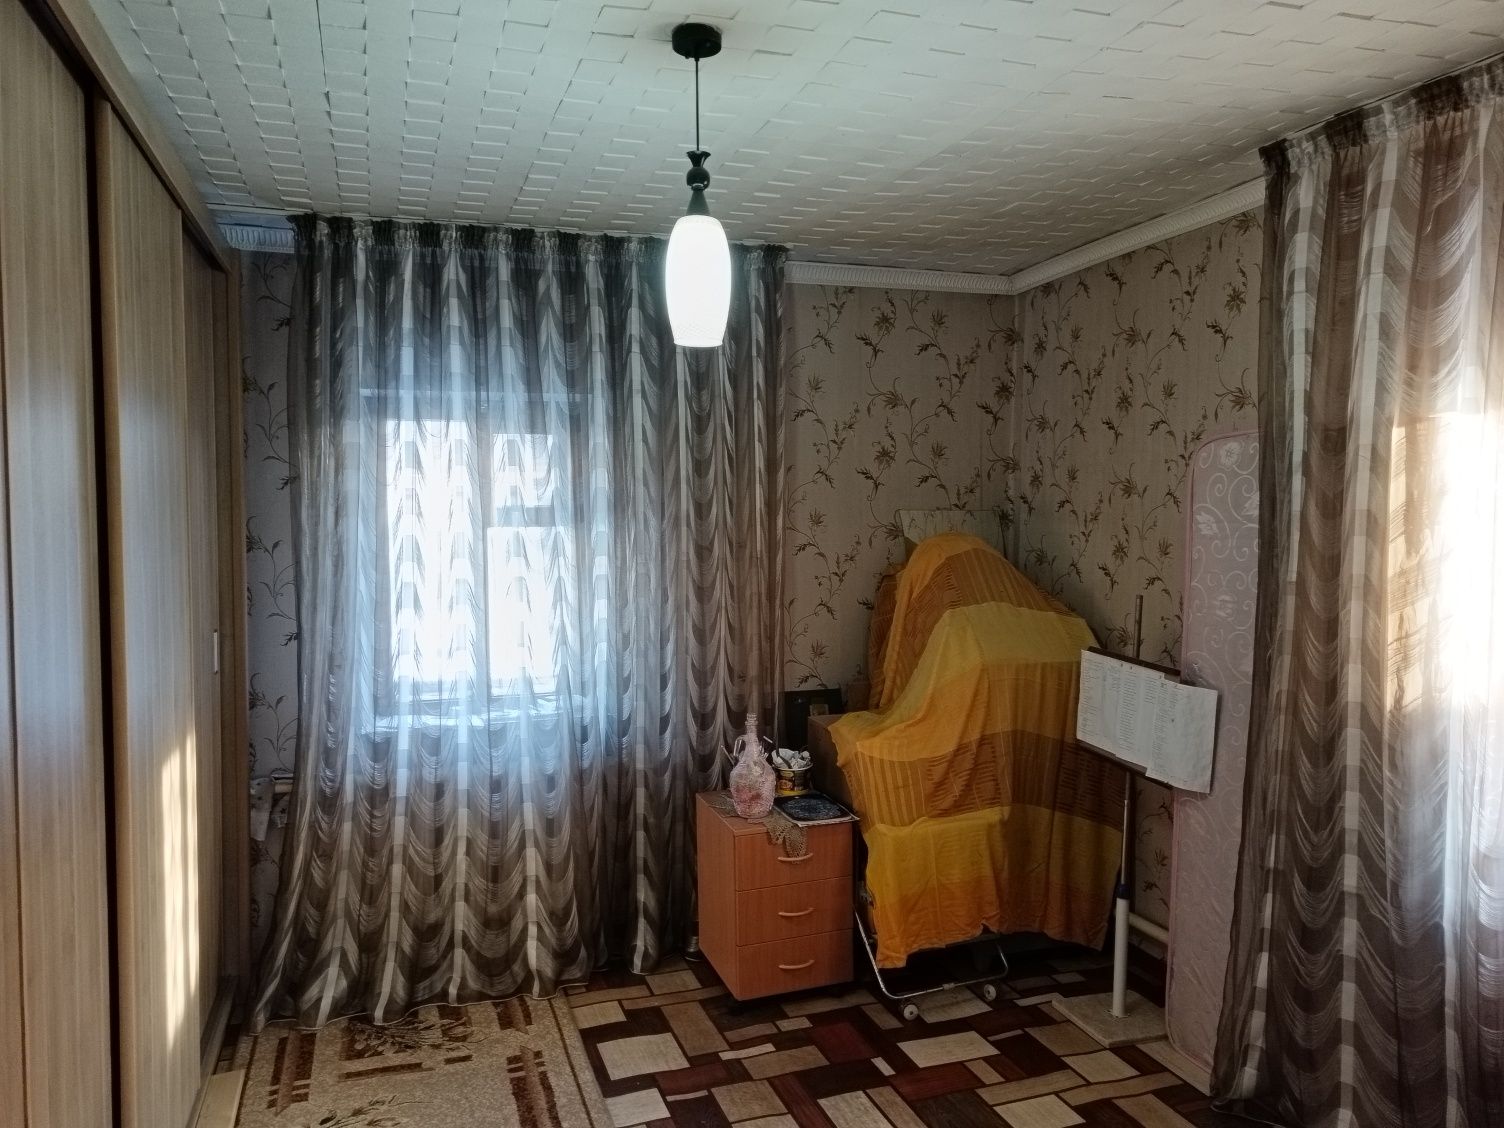 Продам дом кирпичный, центральное отопление. ул. Чернова